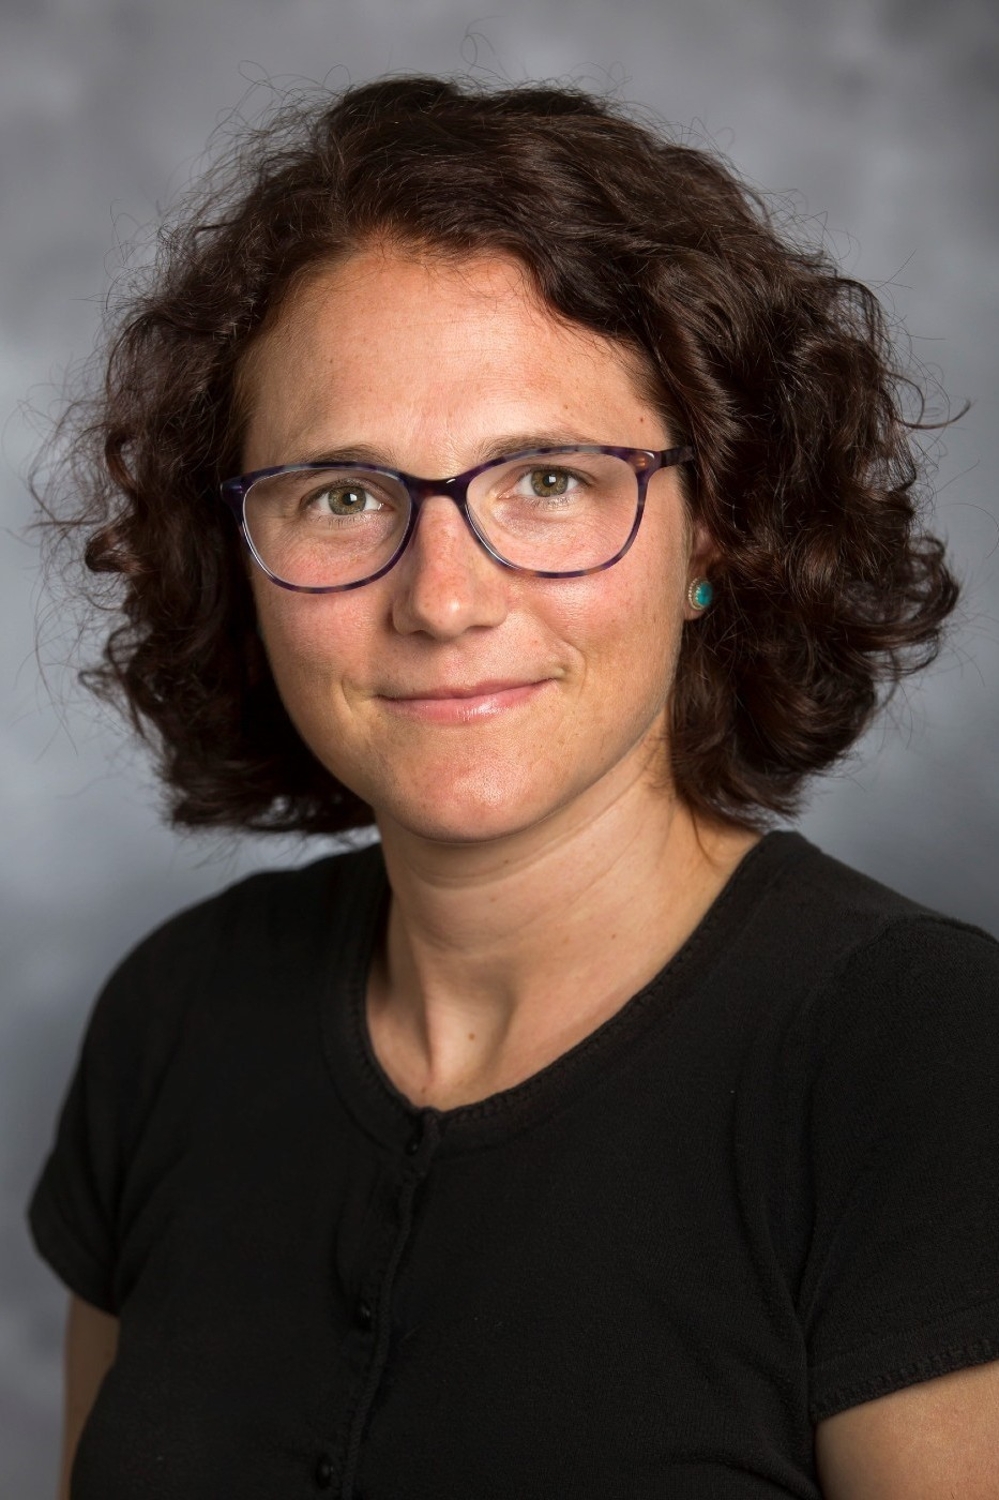  Jenny Mascaro, PhD